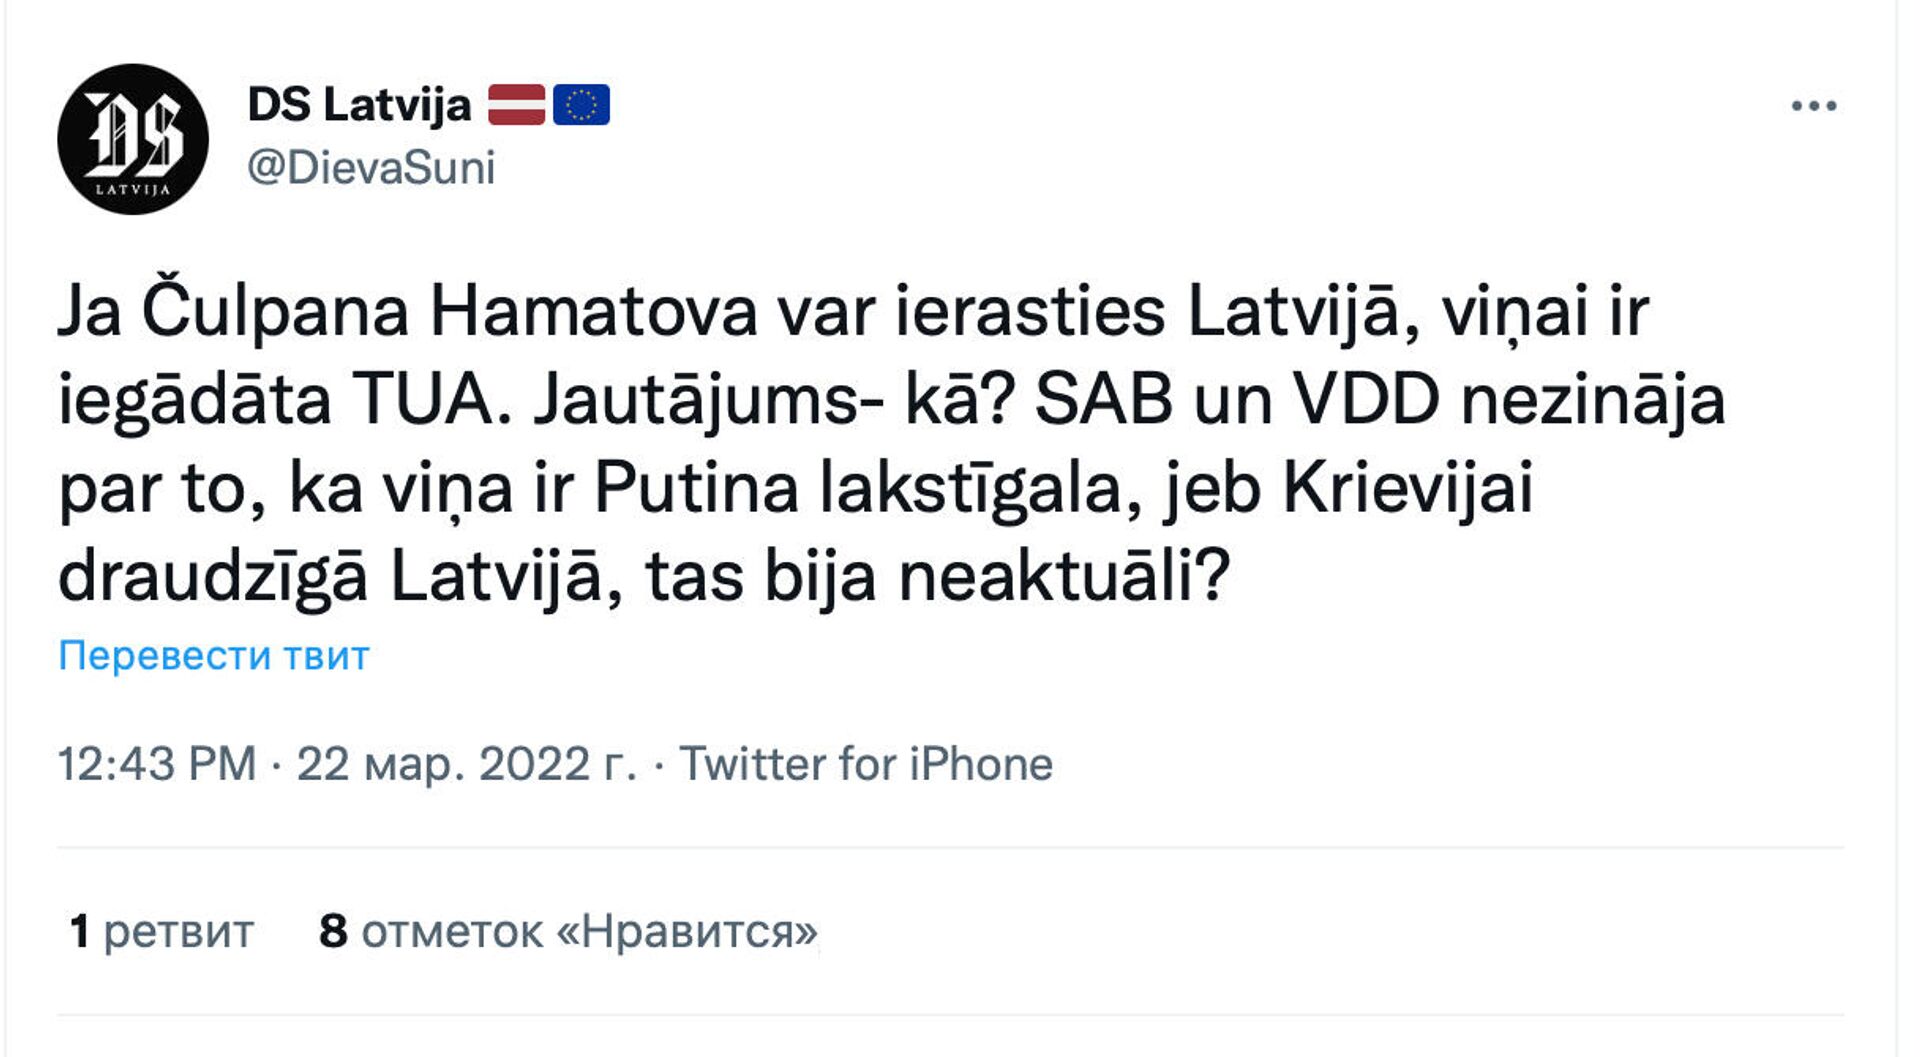 Скриншот поста в Twitter  - Sputnik Латвия, 1920, 22.03.2022